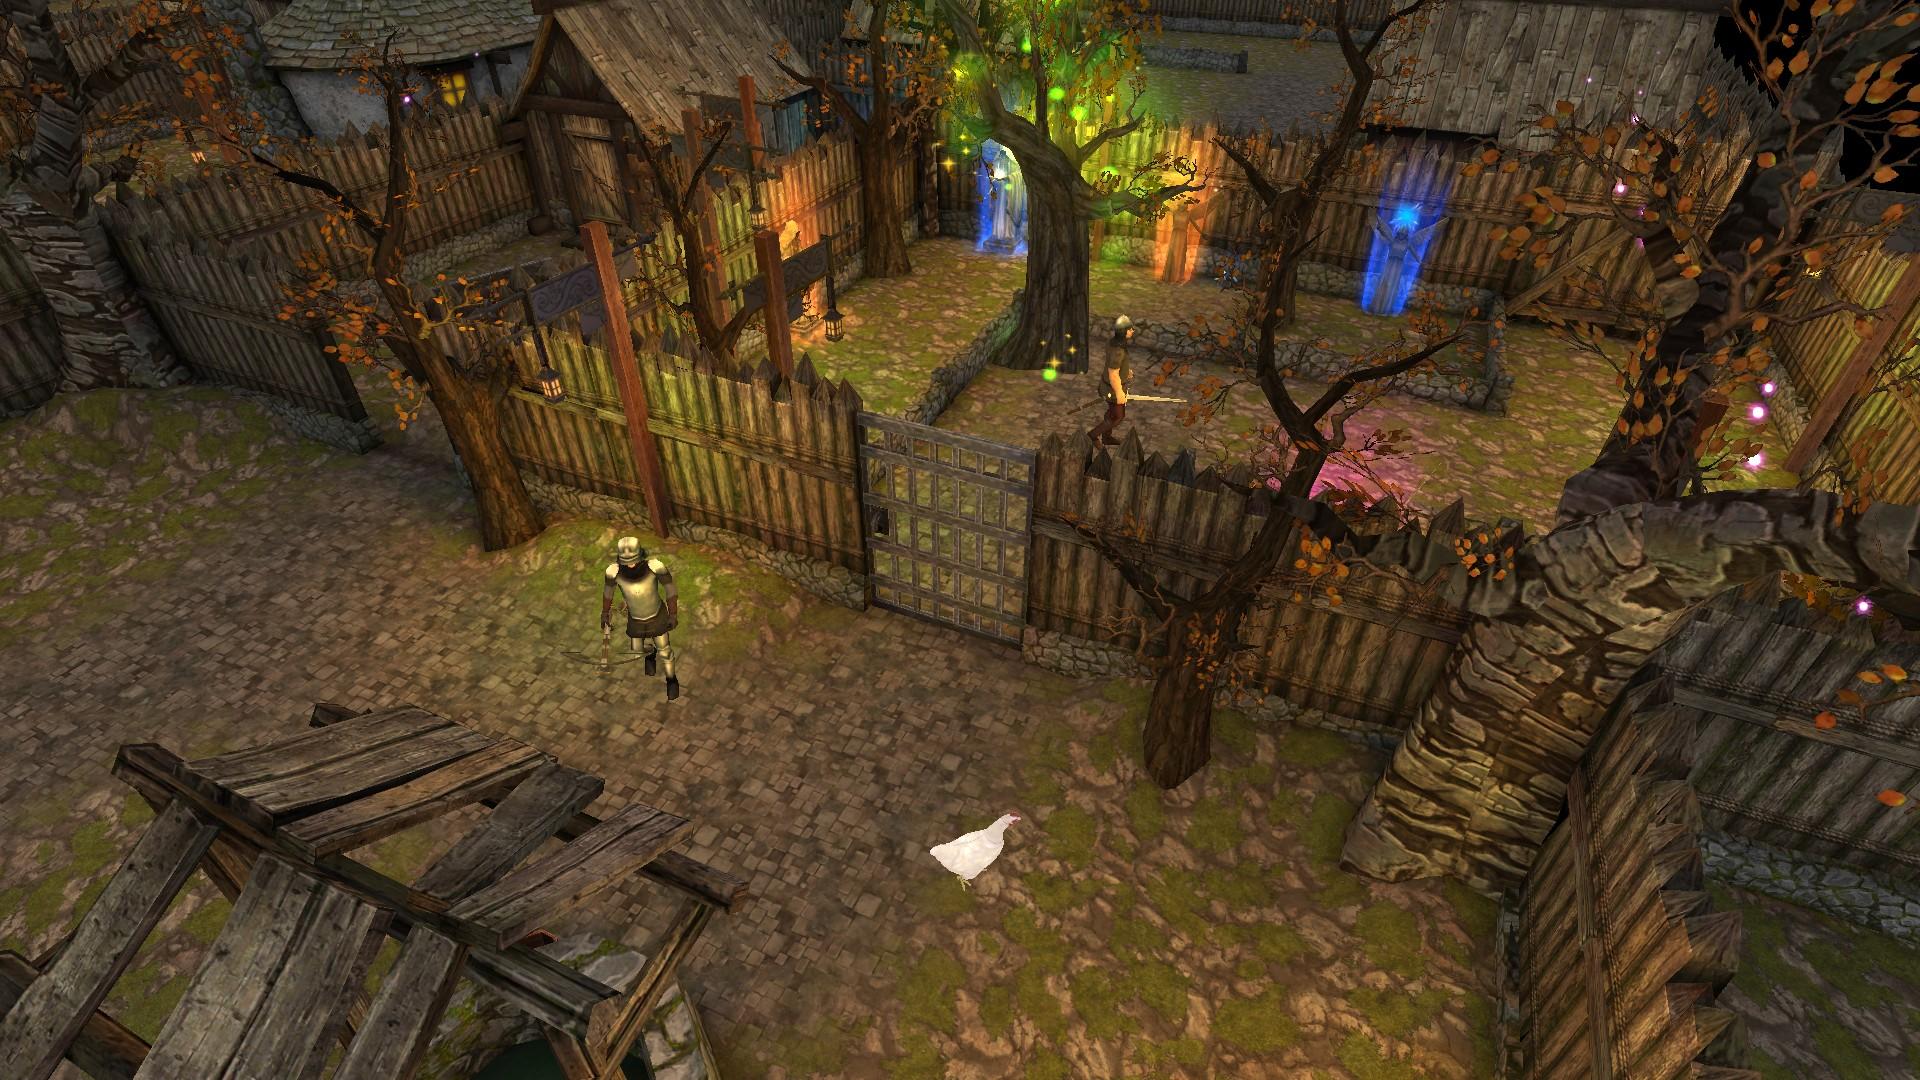 Screenshot 1 of Moonshades RPG Dungeon Crawler 1.9.12